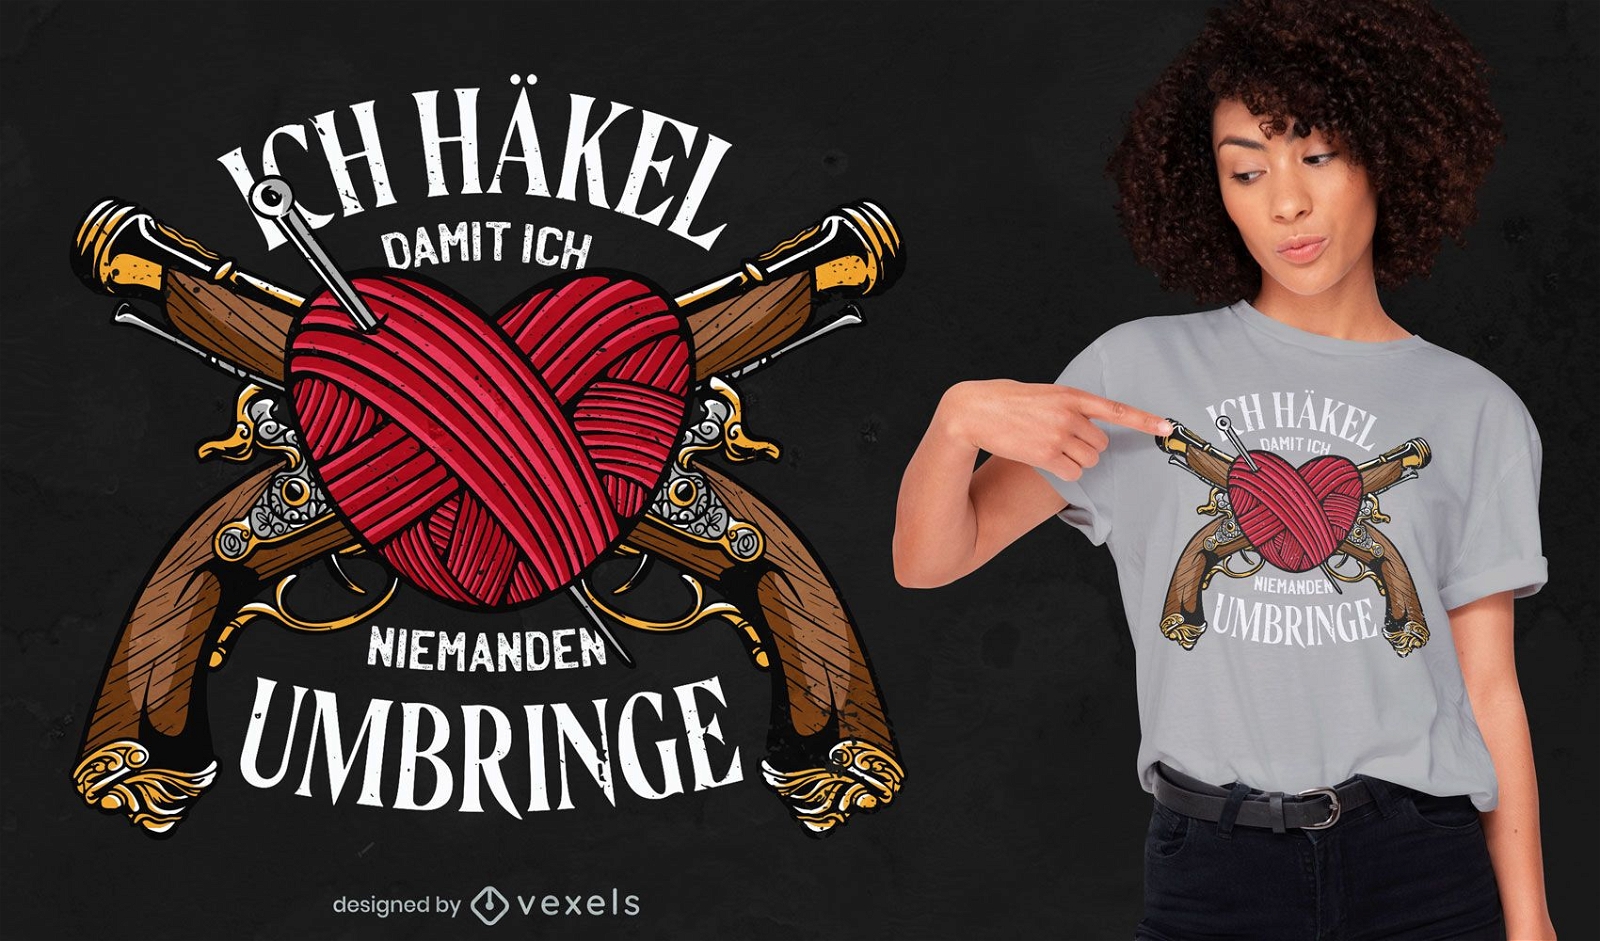 Crochet heart needles and guns t-shirt design